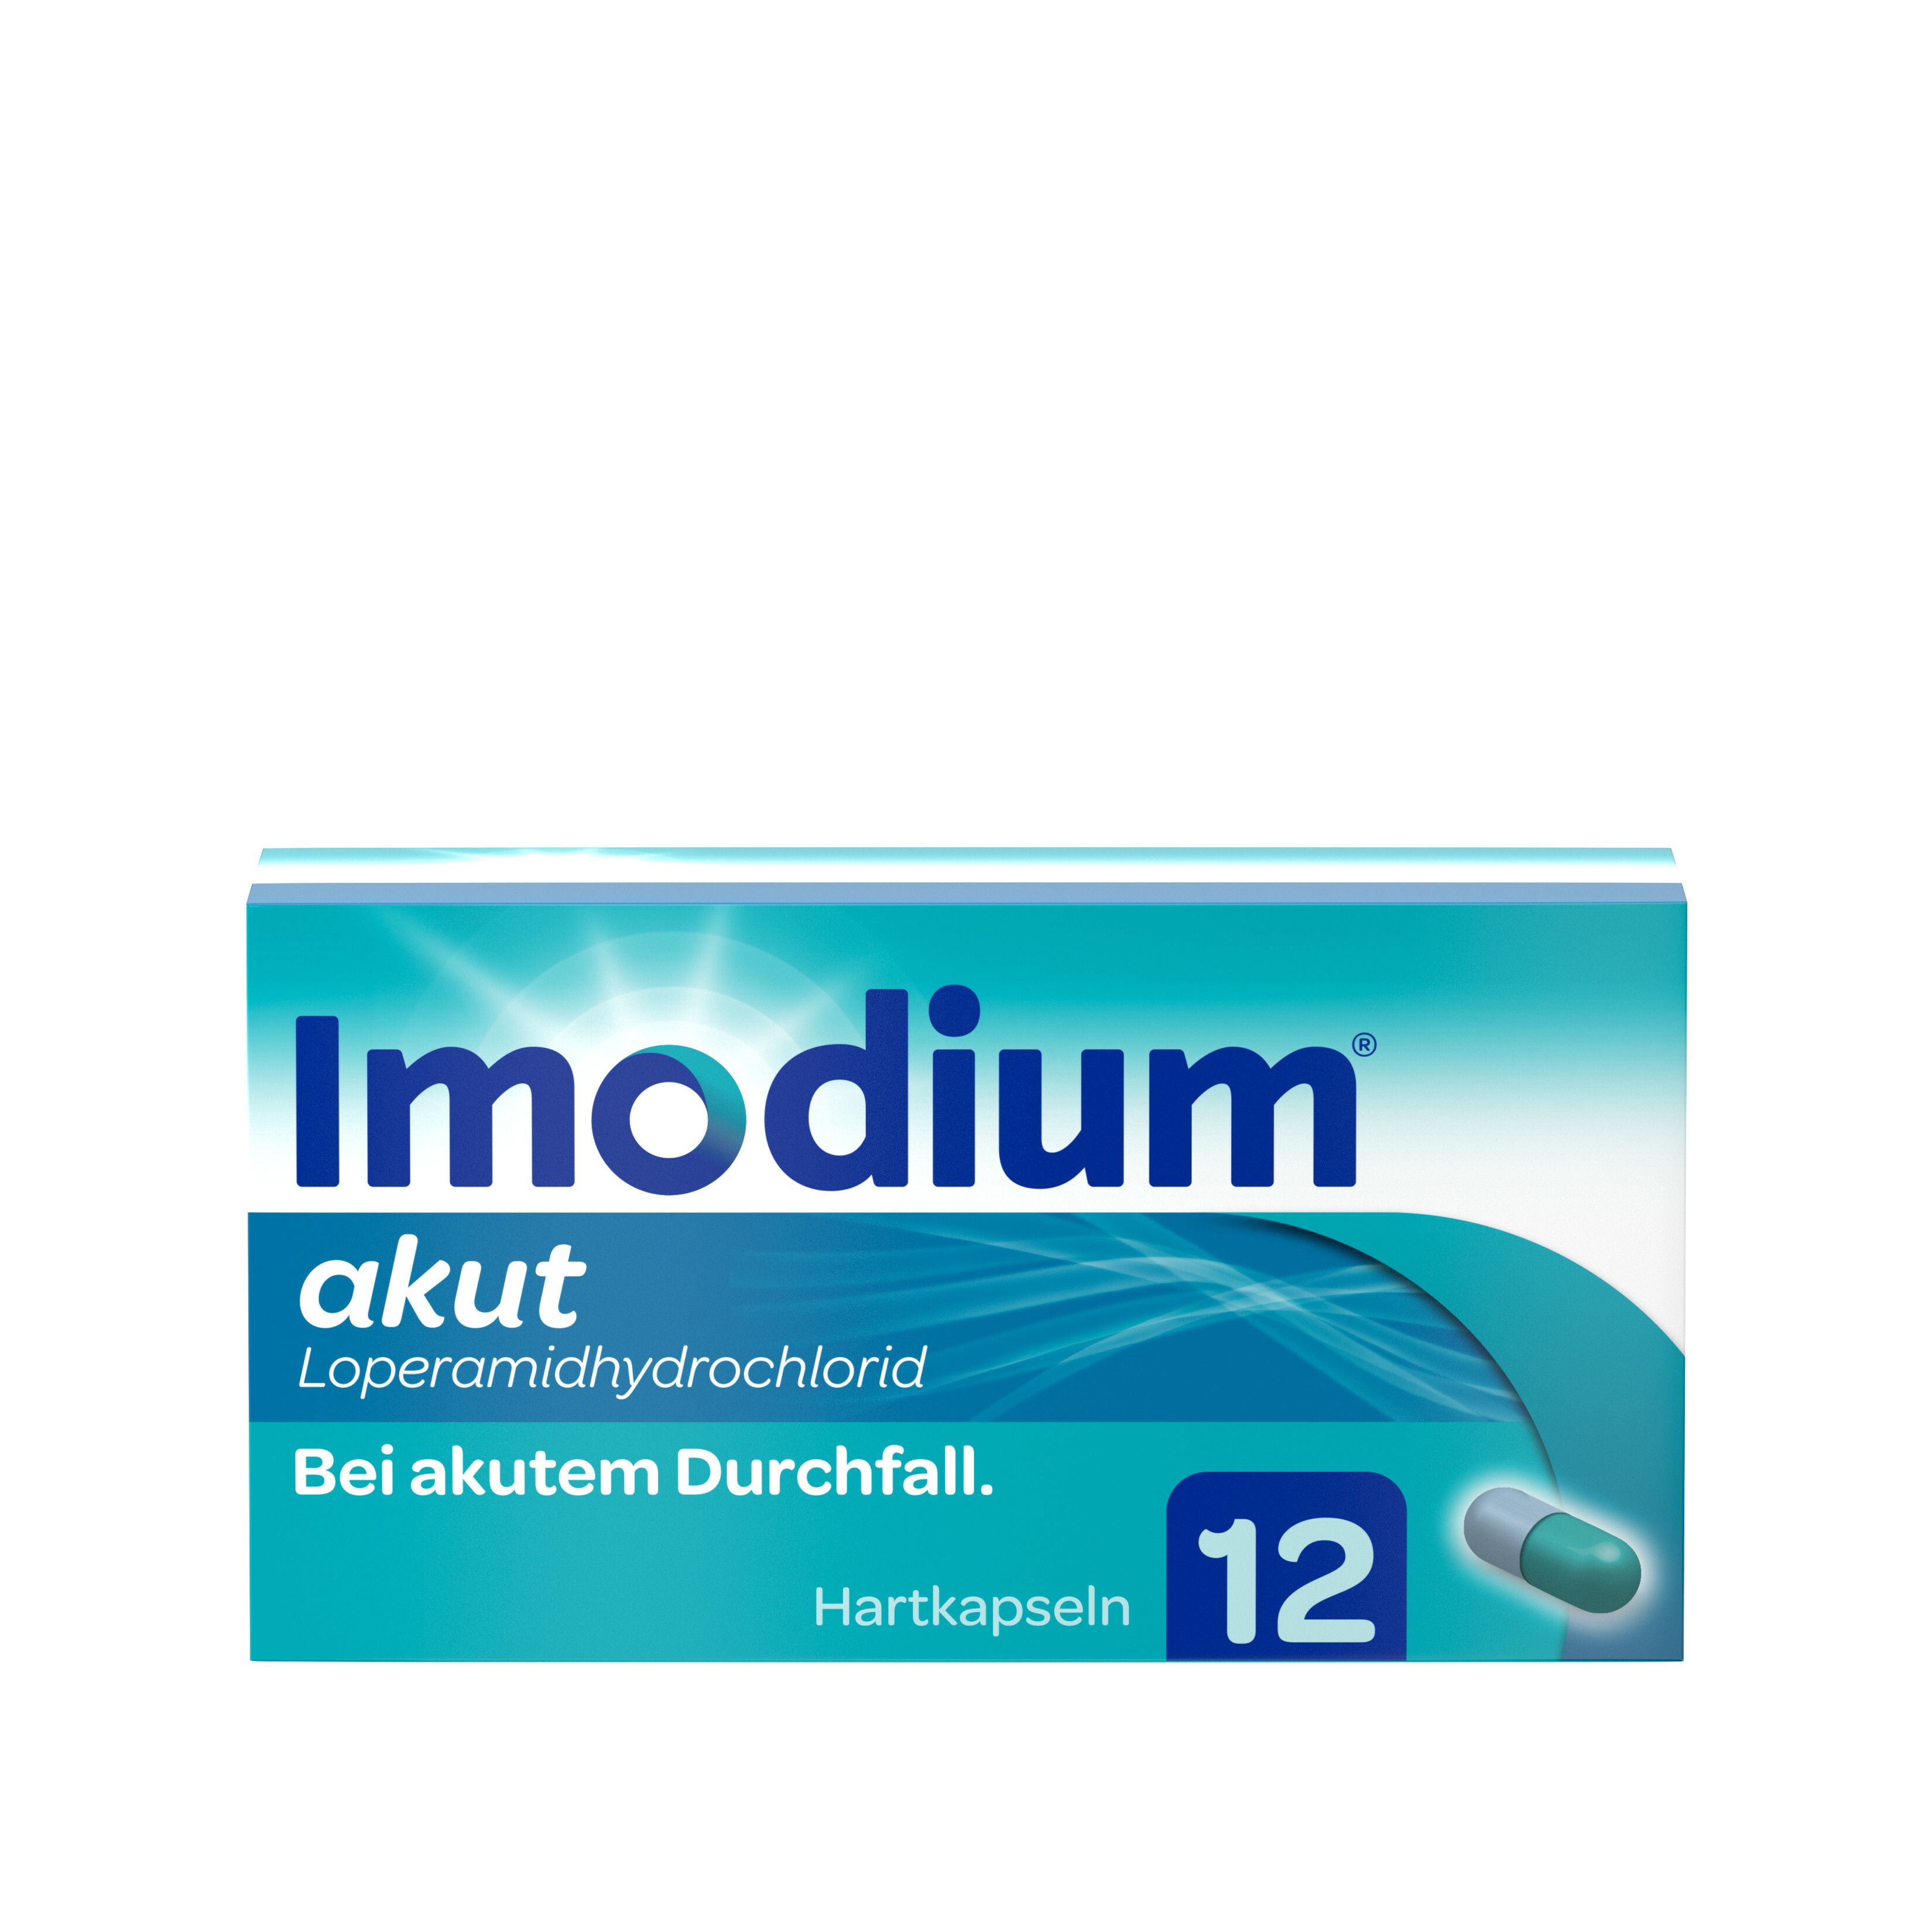 Imodium® akut - bei akutem Durchfall - Jetzt 1€ mit dem Code imodium1 sparen*